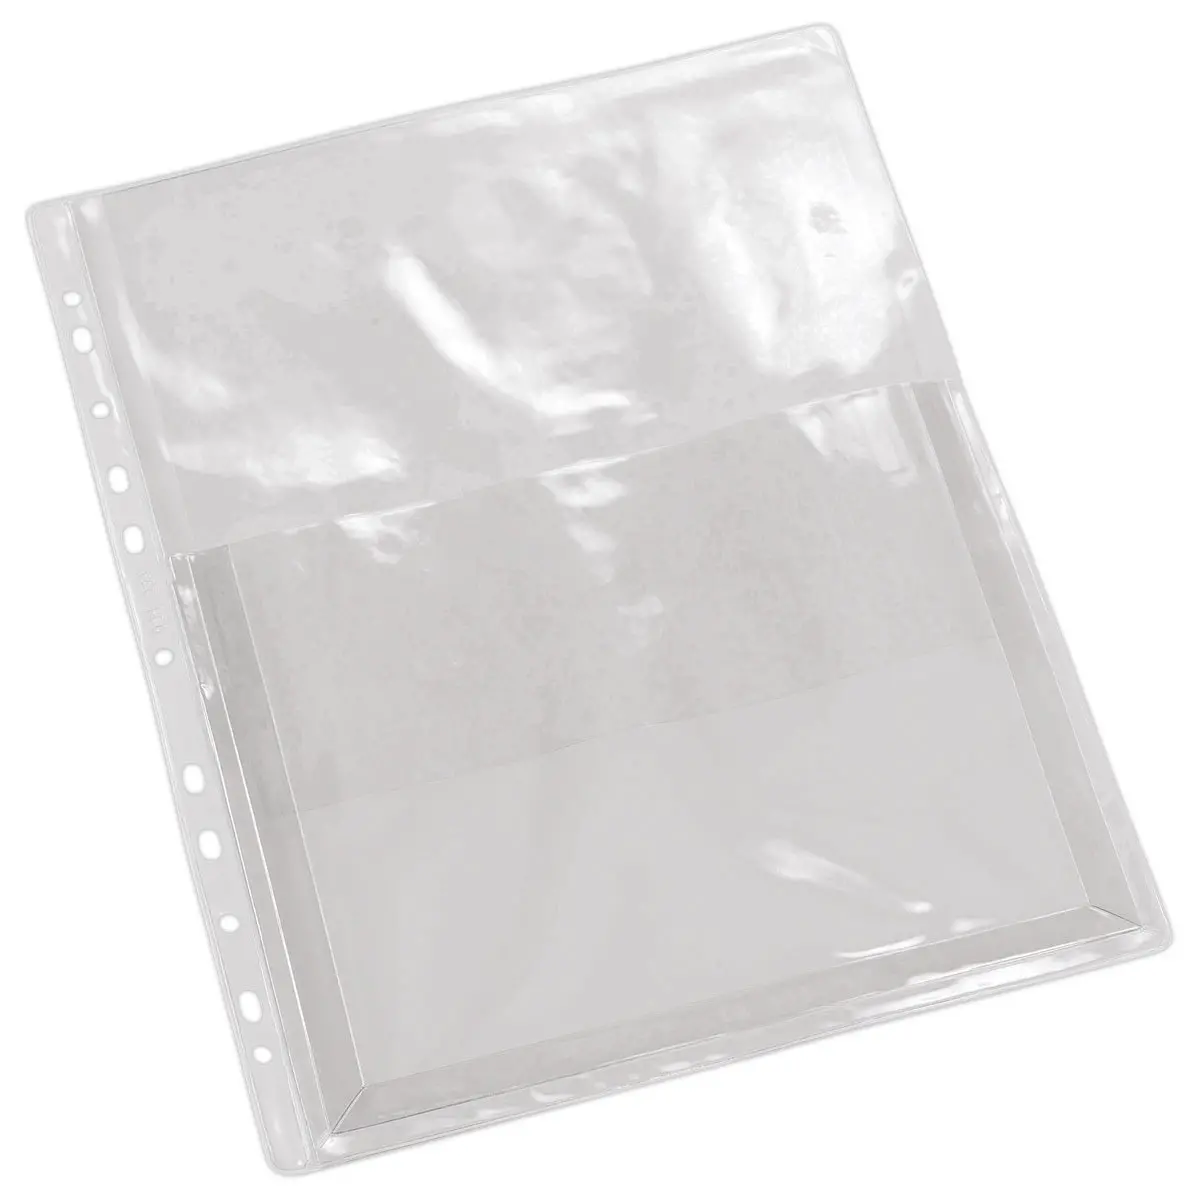 Pochette transparente perforée avec rabat de fermeture - A4 - 0,12 mm - 100  pochettes